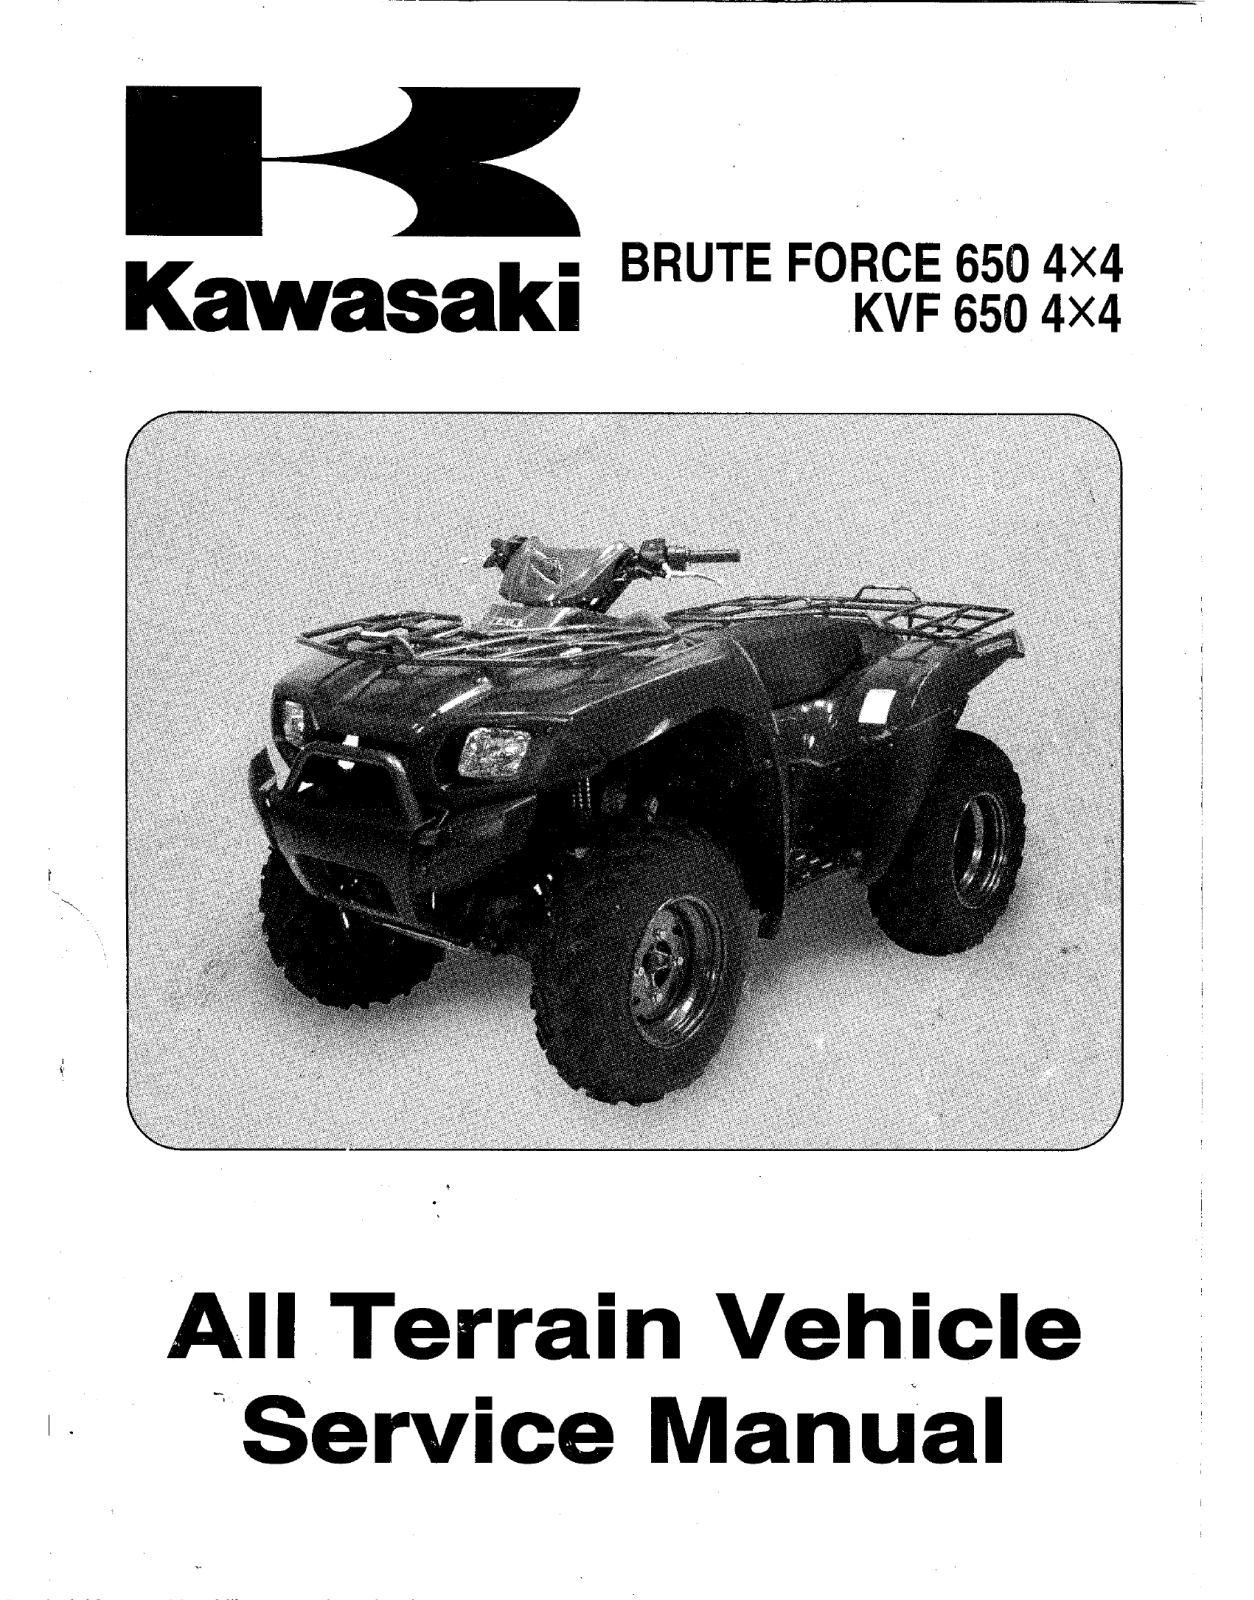 Kawasaki KVF 650 4x4 Service Manual